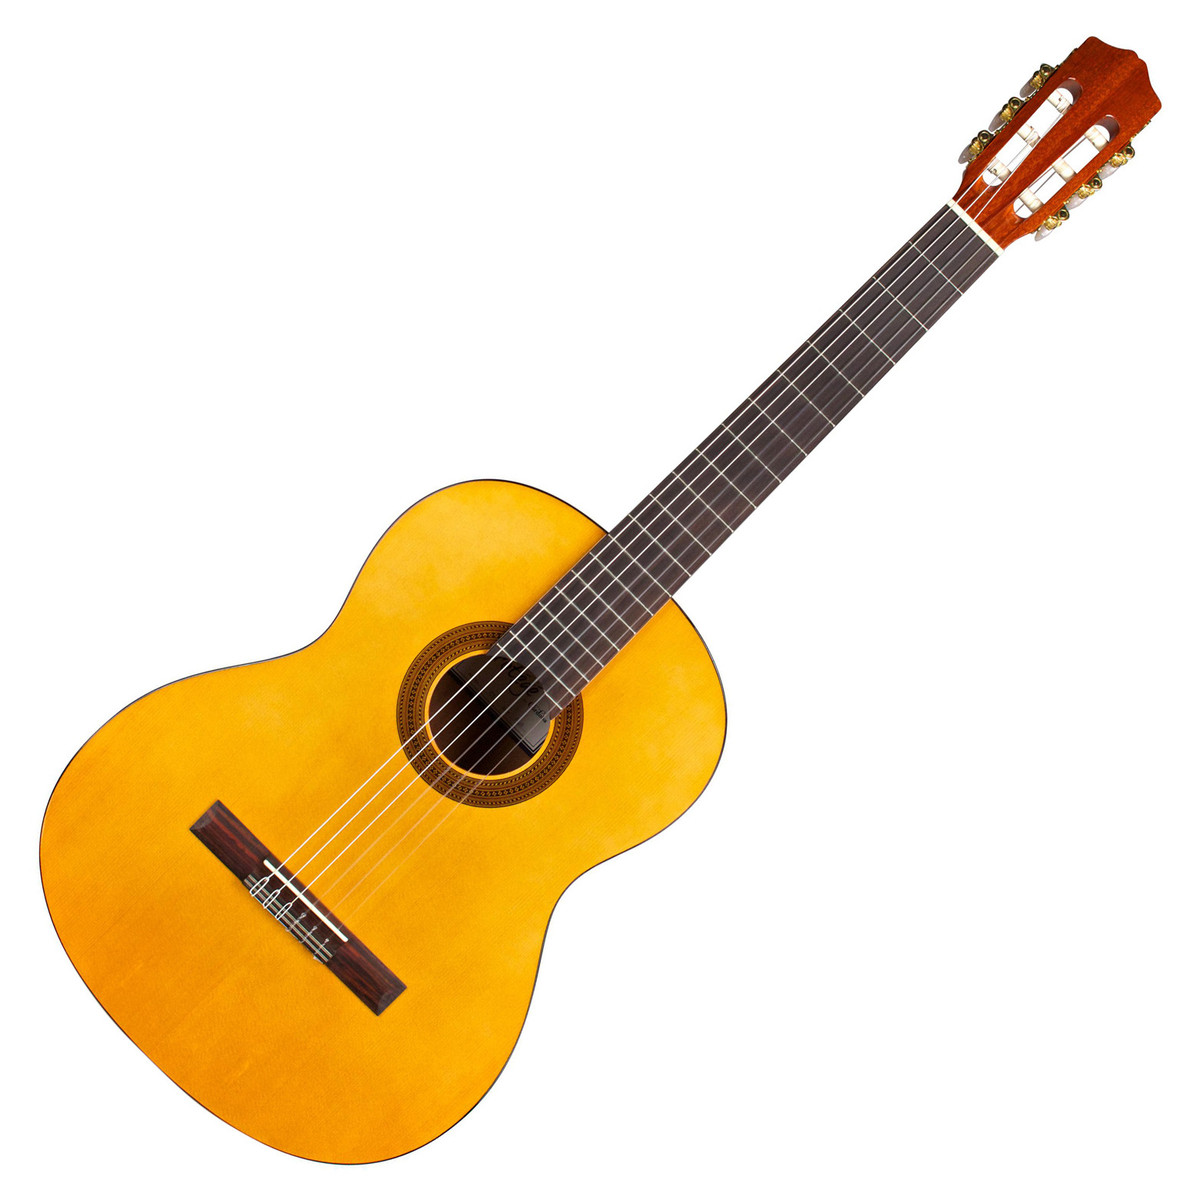 Đàn guitar Cordoba C1 - shop guitar giá rẻ hà đông